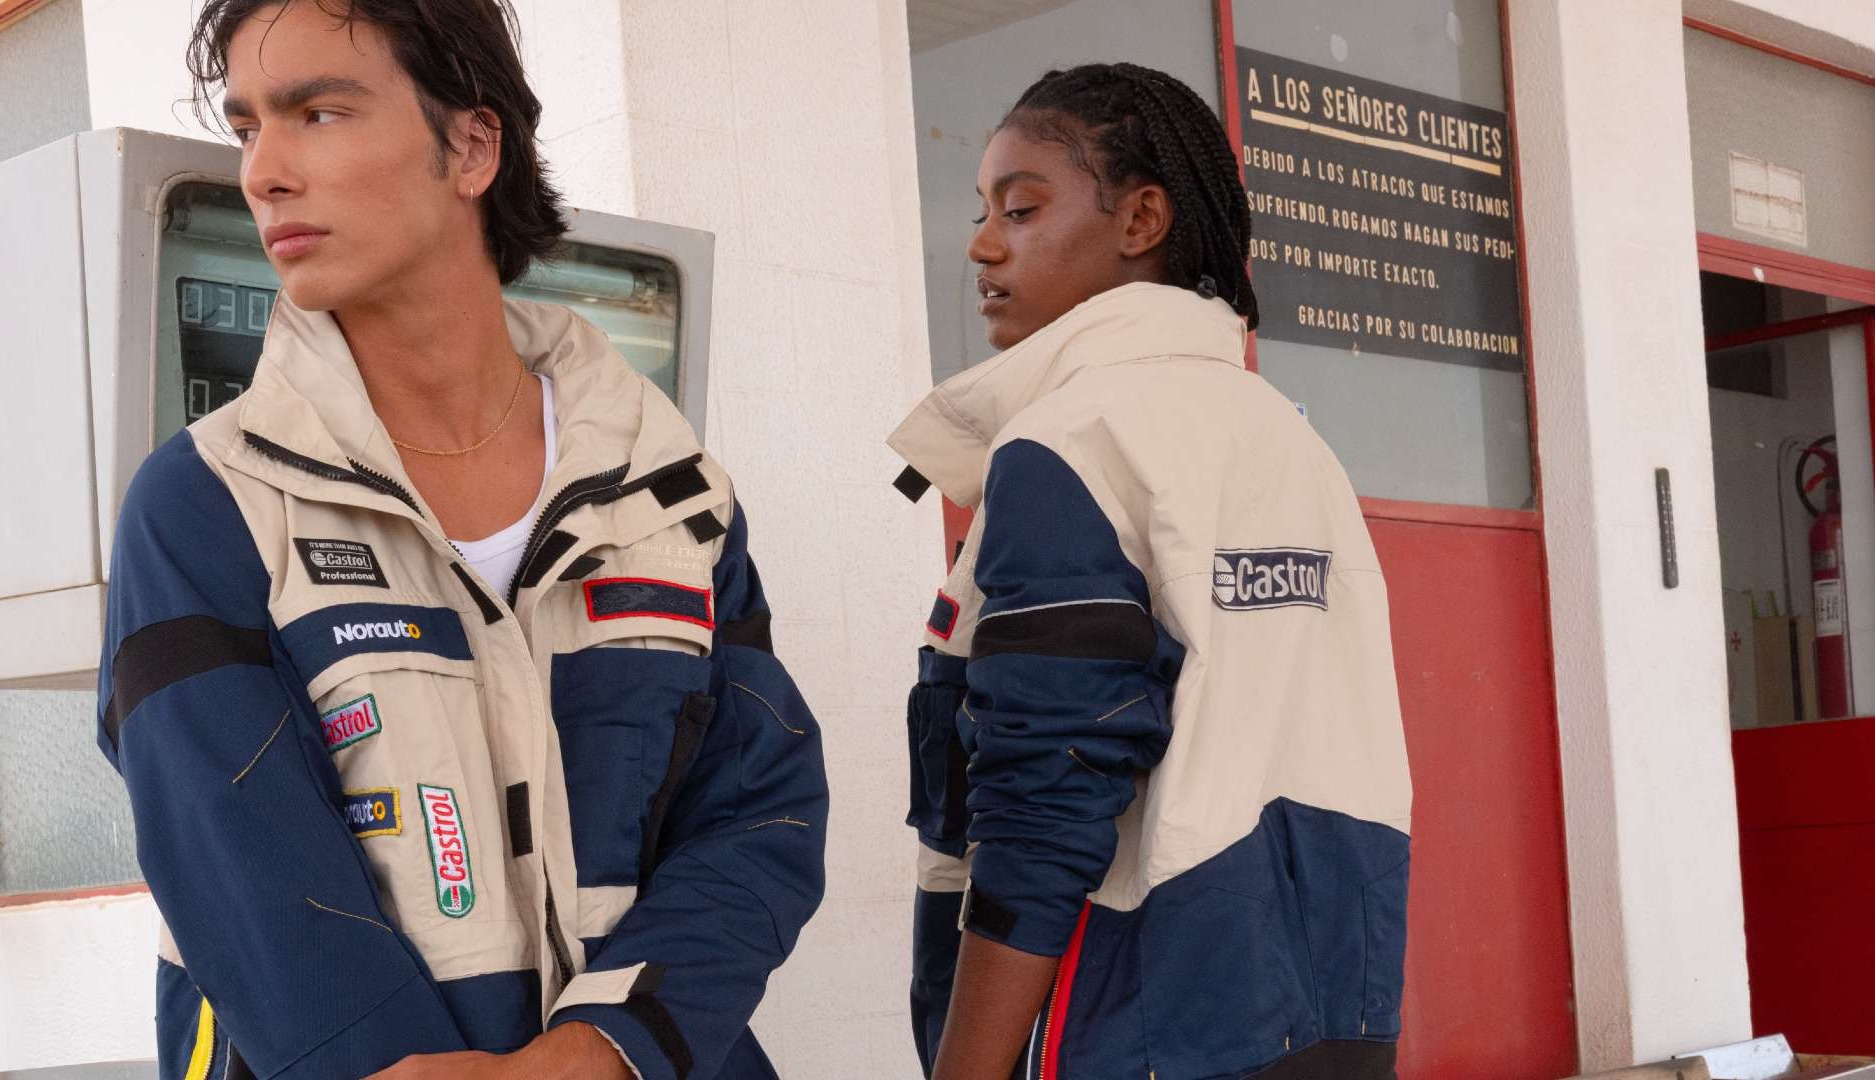 Norauto, Castrol y alumnas de diseño crean dos chaquetas únicas a partir de uniformes reciclados